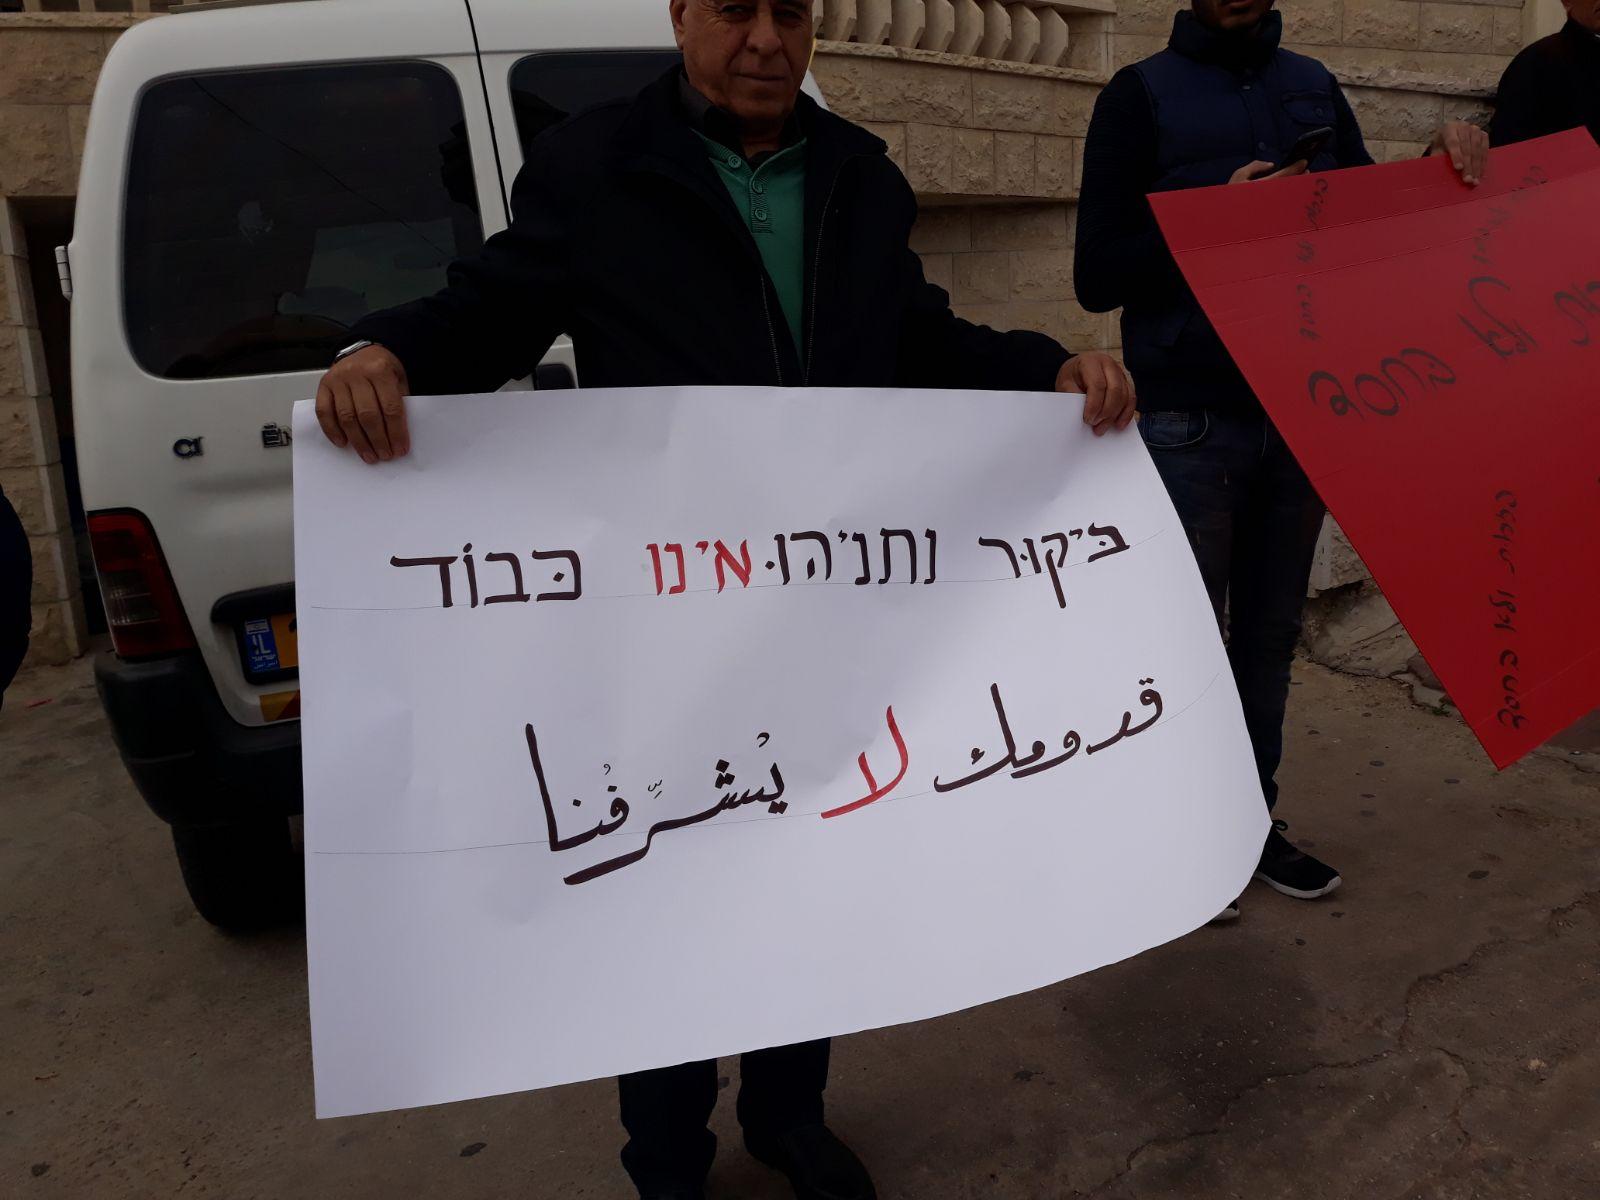  بركة: يتحتّم على فلسطينيي الداخل استقبال نتنياهو   بالصرامي على وجهه   2017122812192632